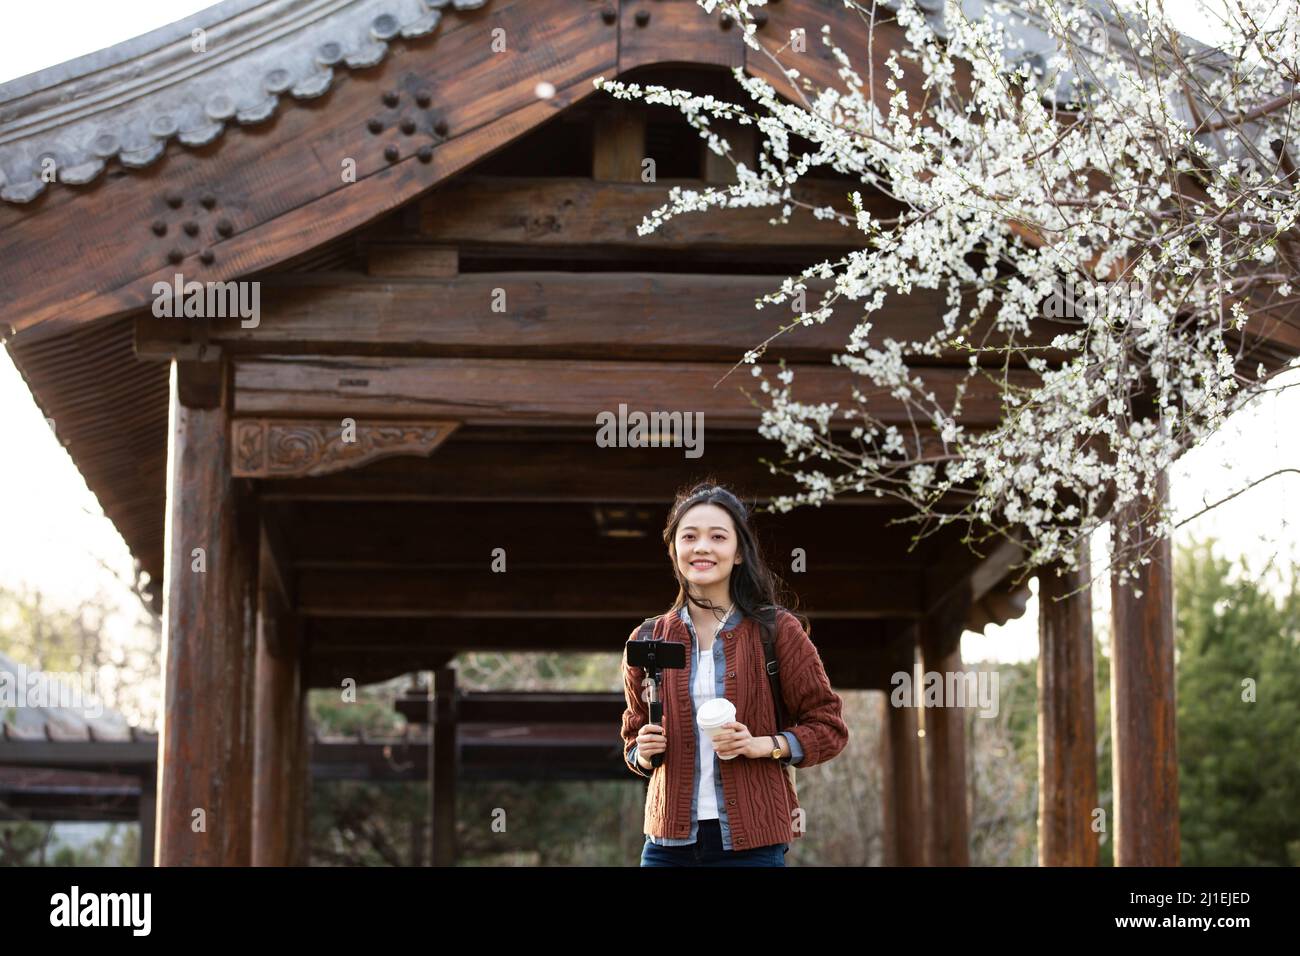 Junge Frau, die ein Selfie unter einem Pfirsichblütenbaum fotografiert - Stockfoto Stockfoto